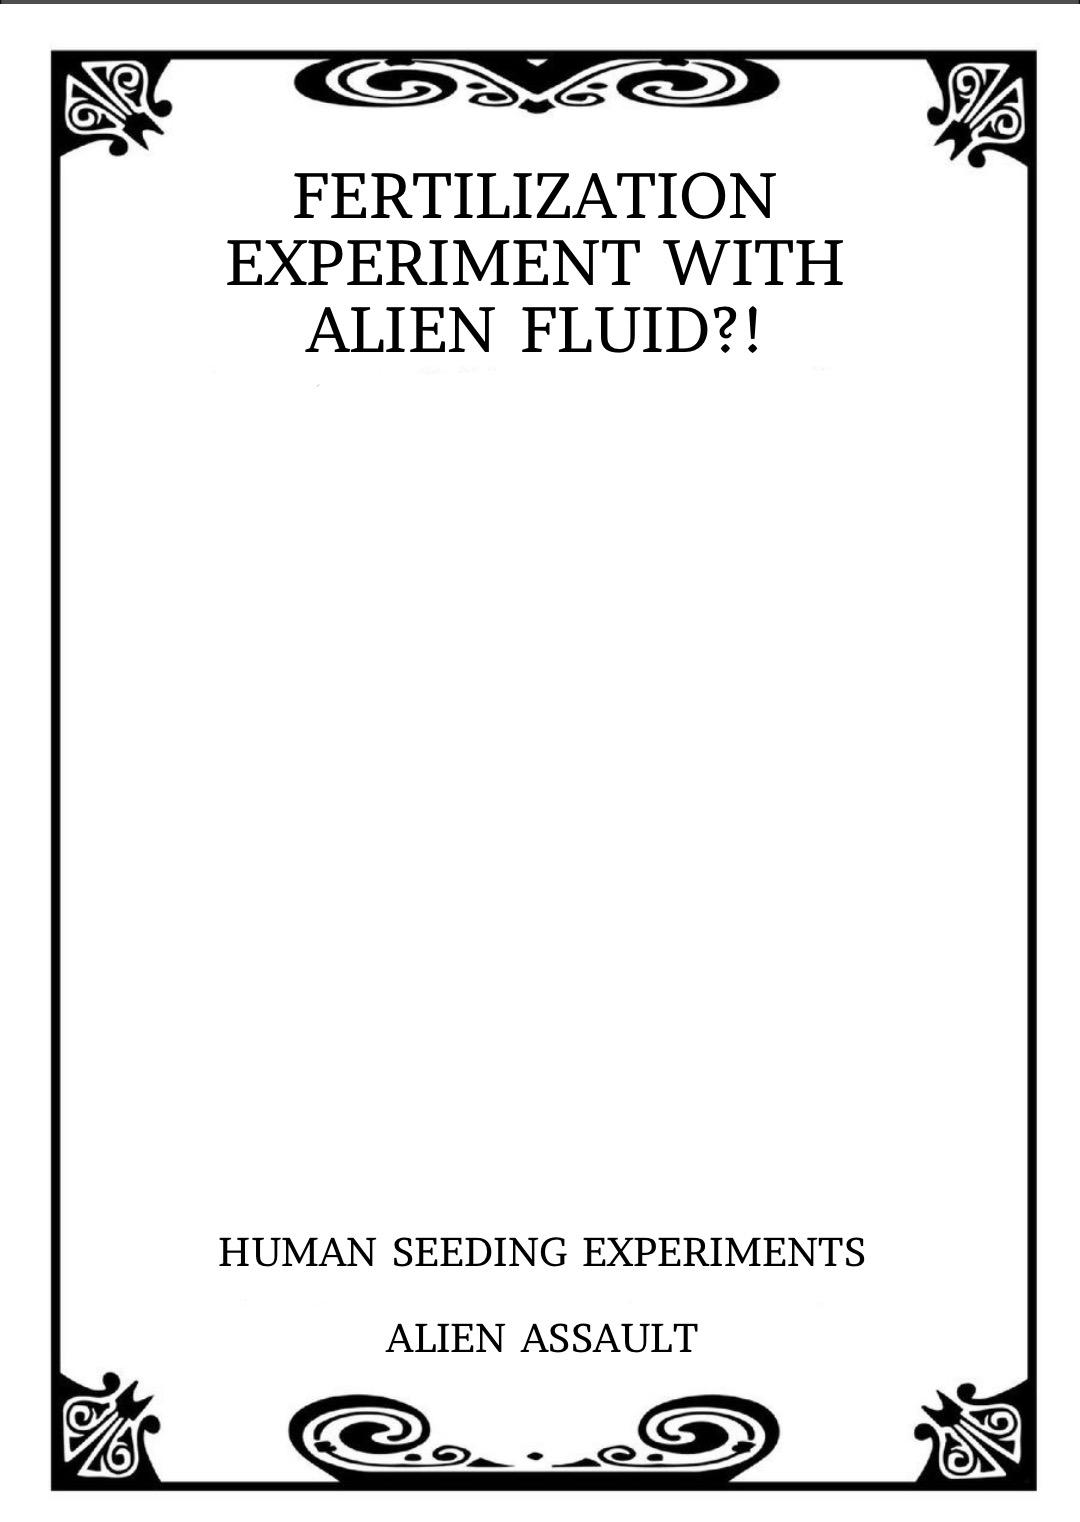 Alien Seeding Experiments 1 26